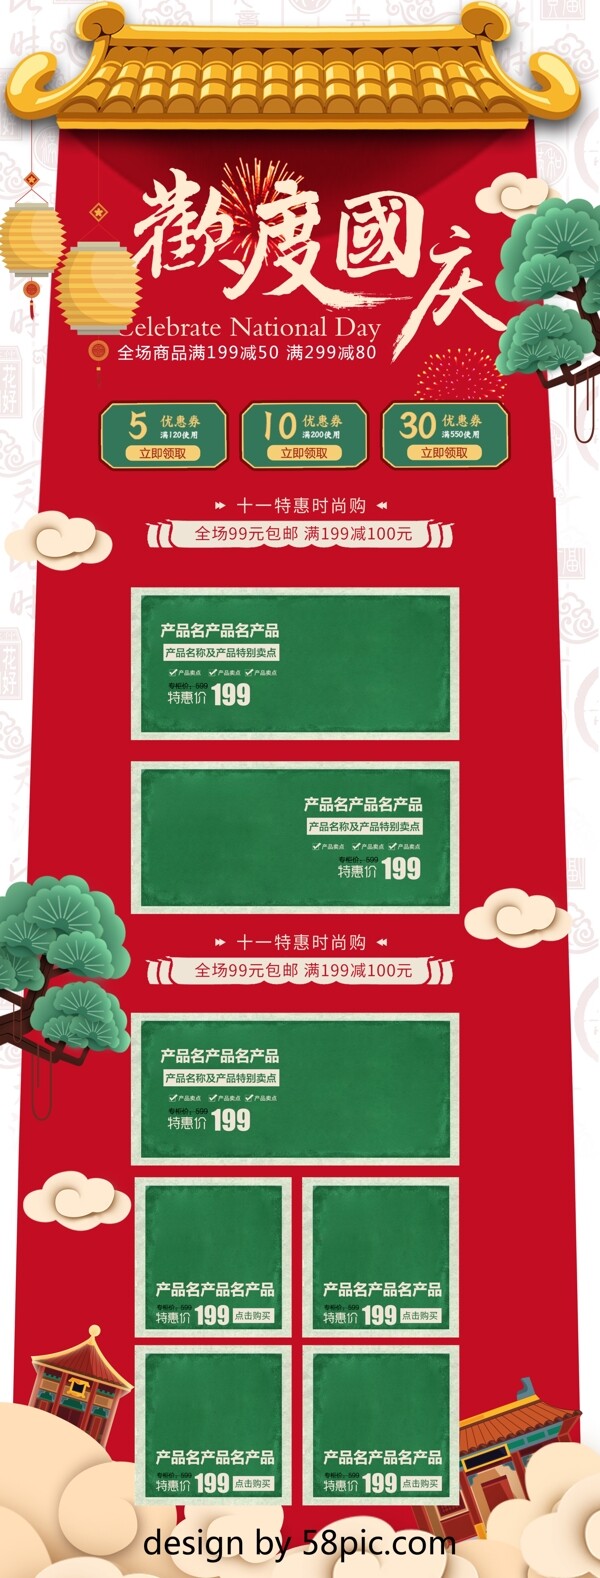 红色中国风喜庆国庆节首页模板